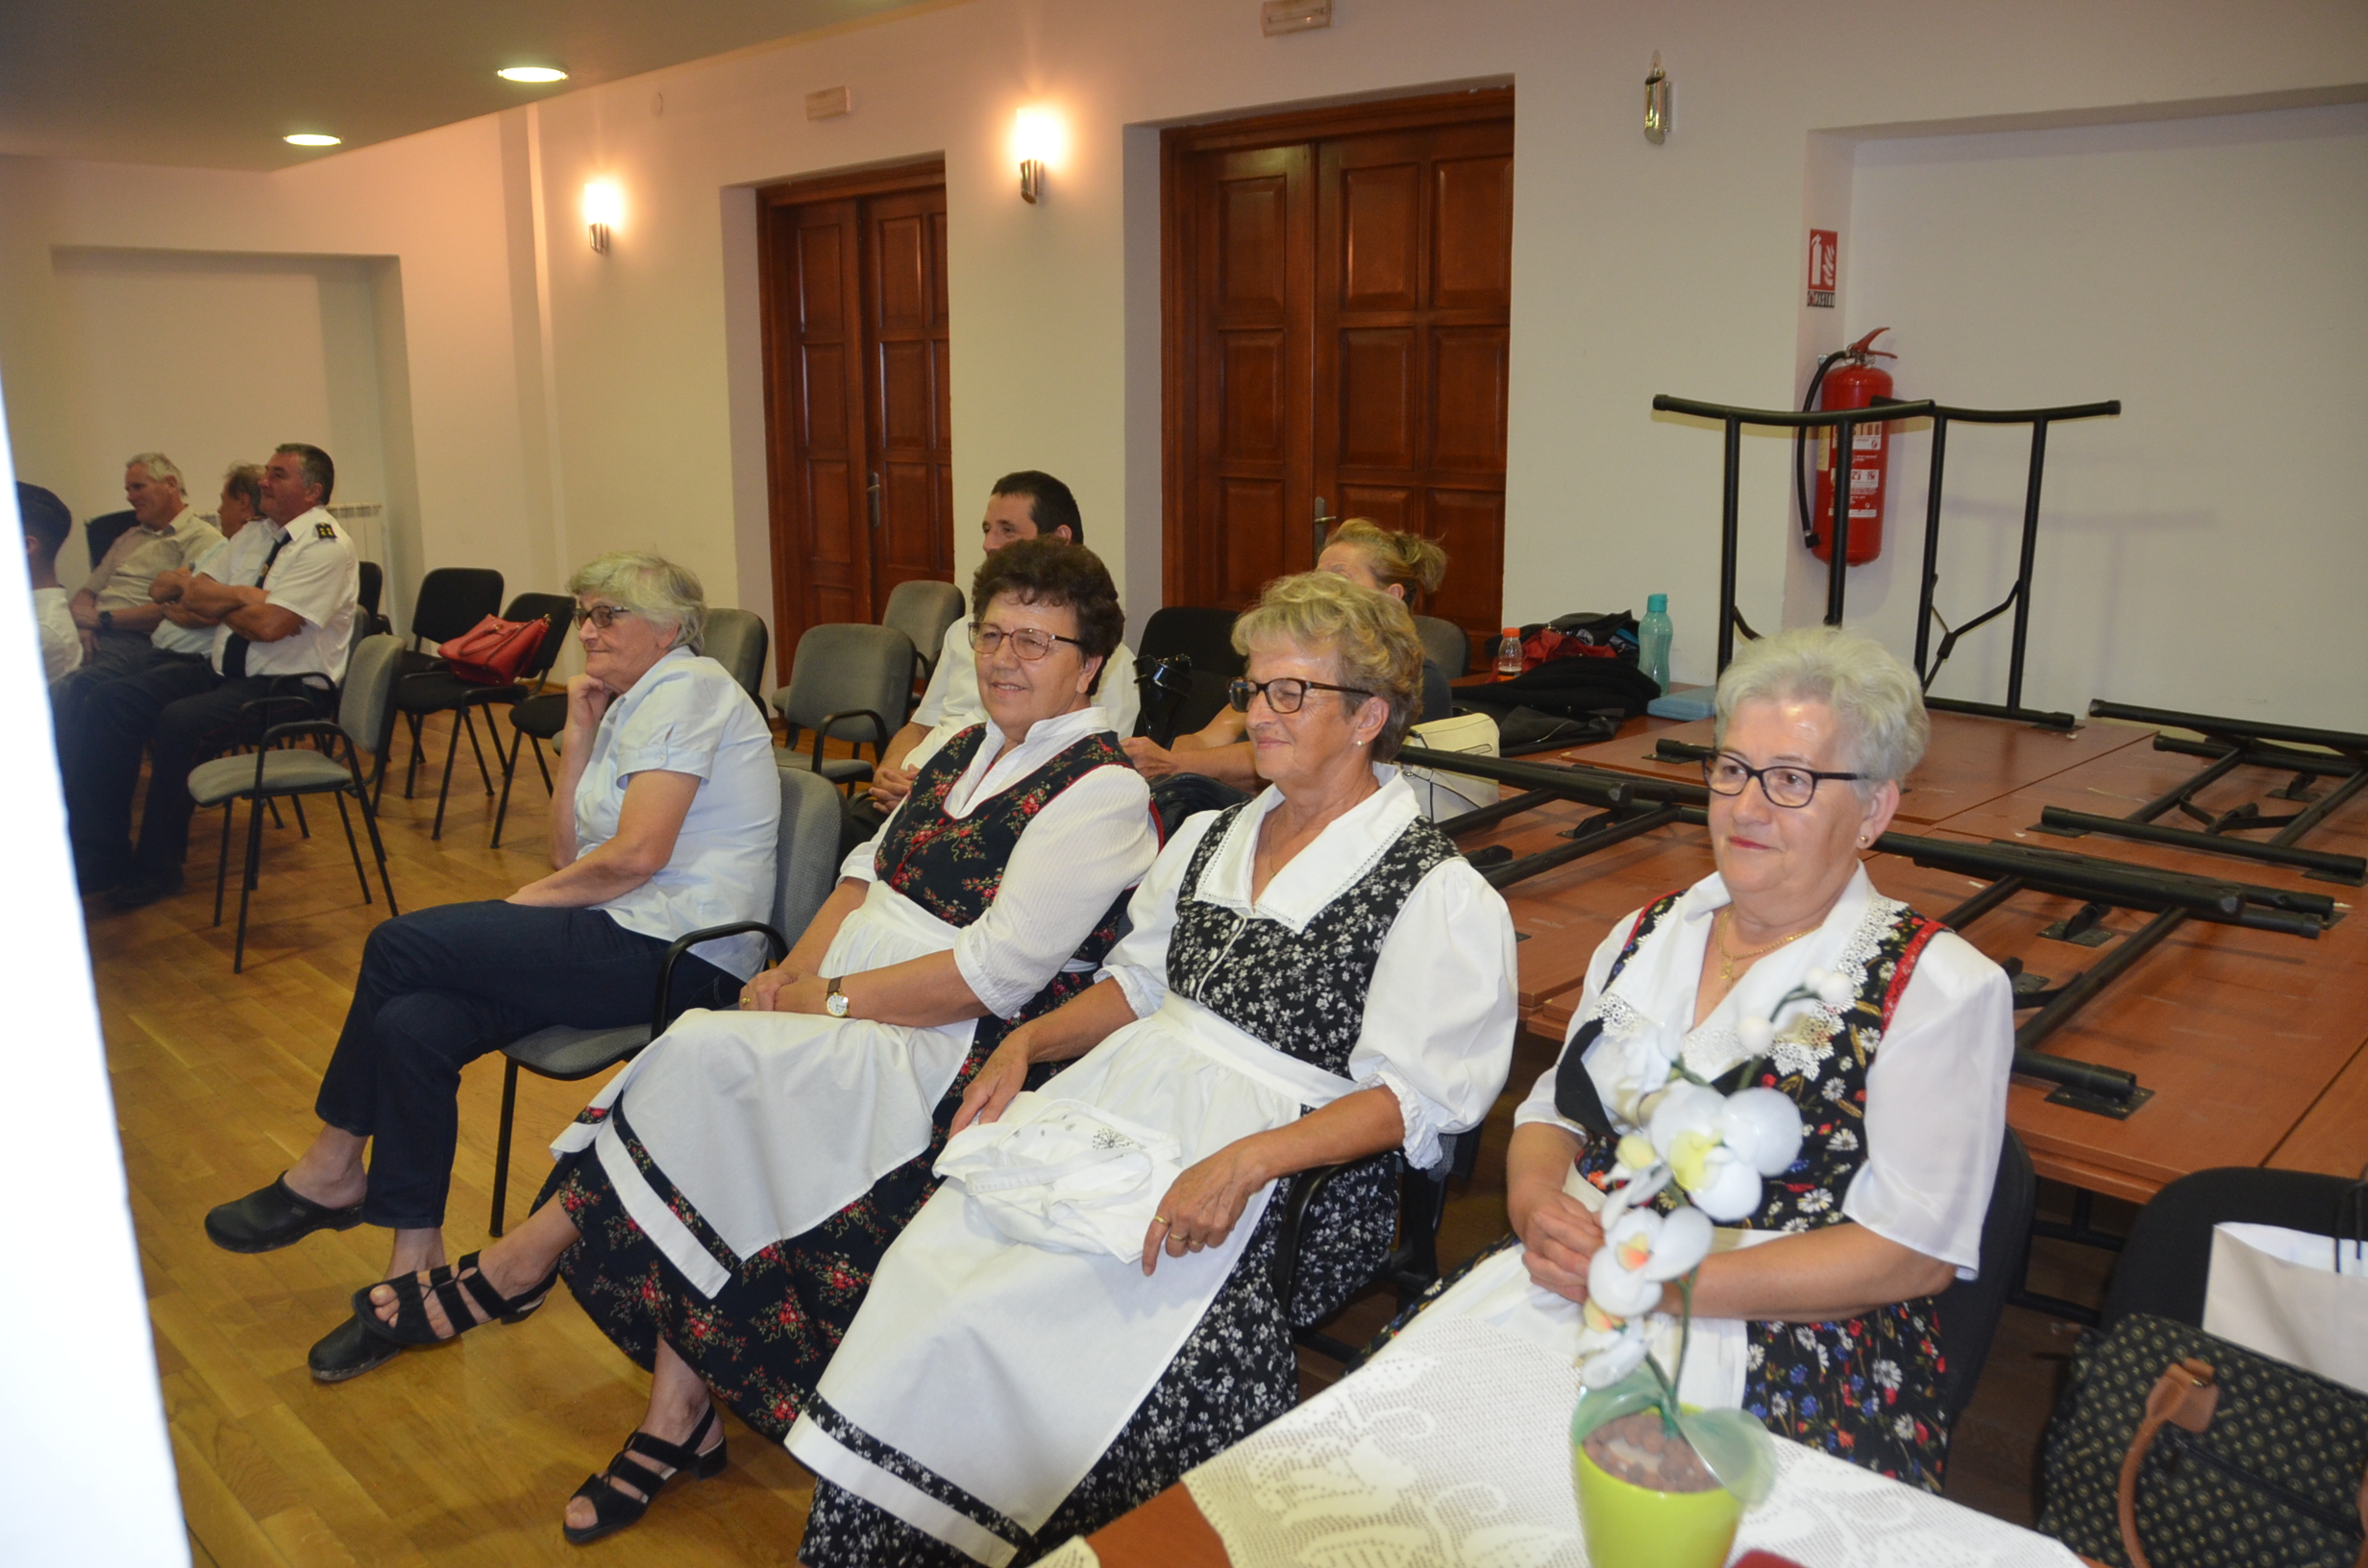 Članice udruge Skradska žena dobile su zahvalnice za 25 godina rada / Foto M. KRMPOTIĆ